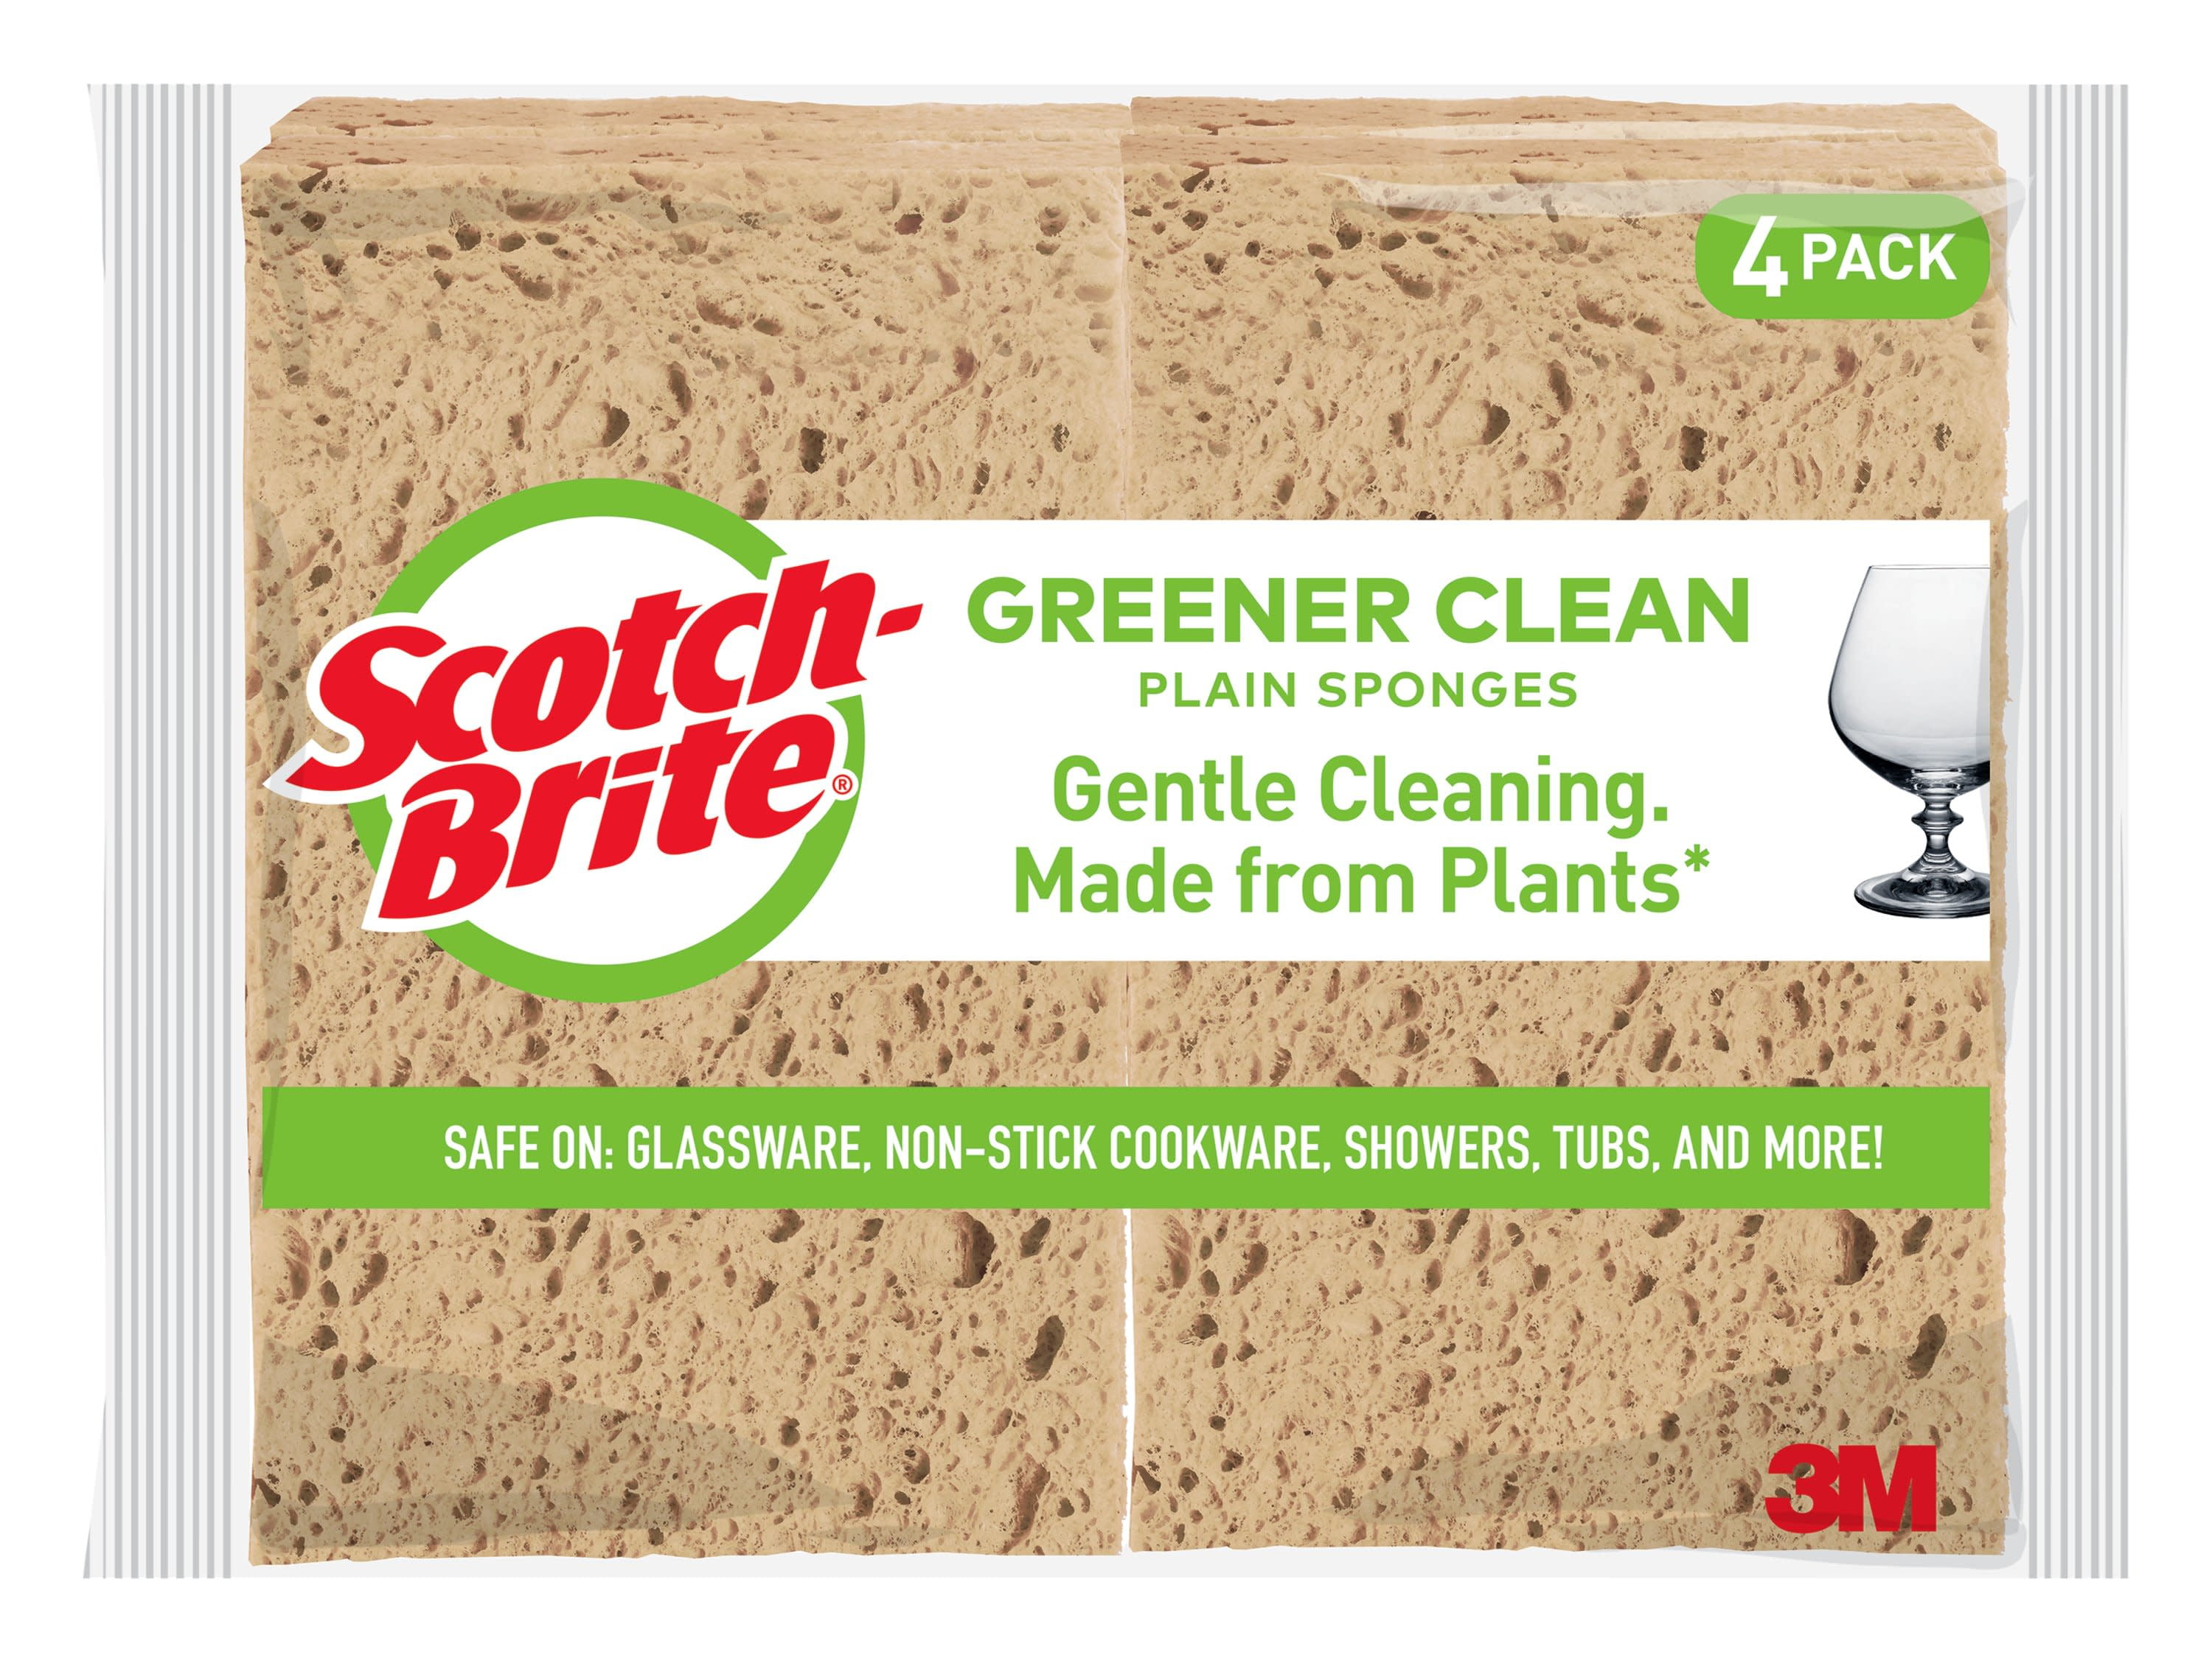 2 Pack 6 Count Scotch-Brite Greener Clean Non-Scratch Scrub Sponges